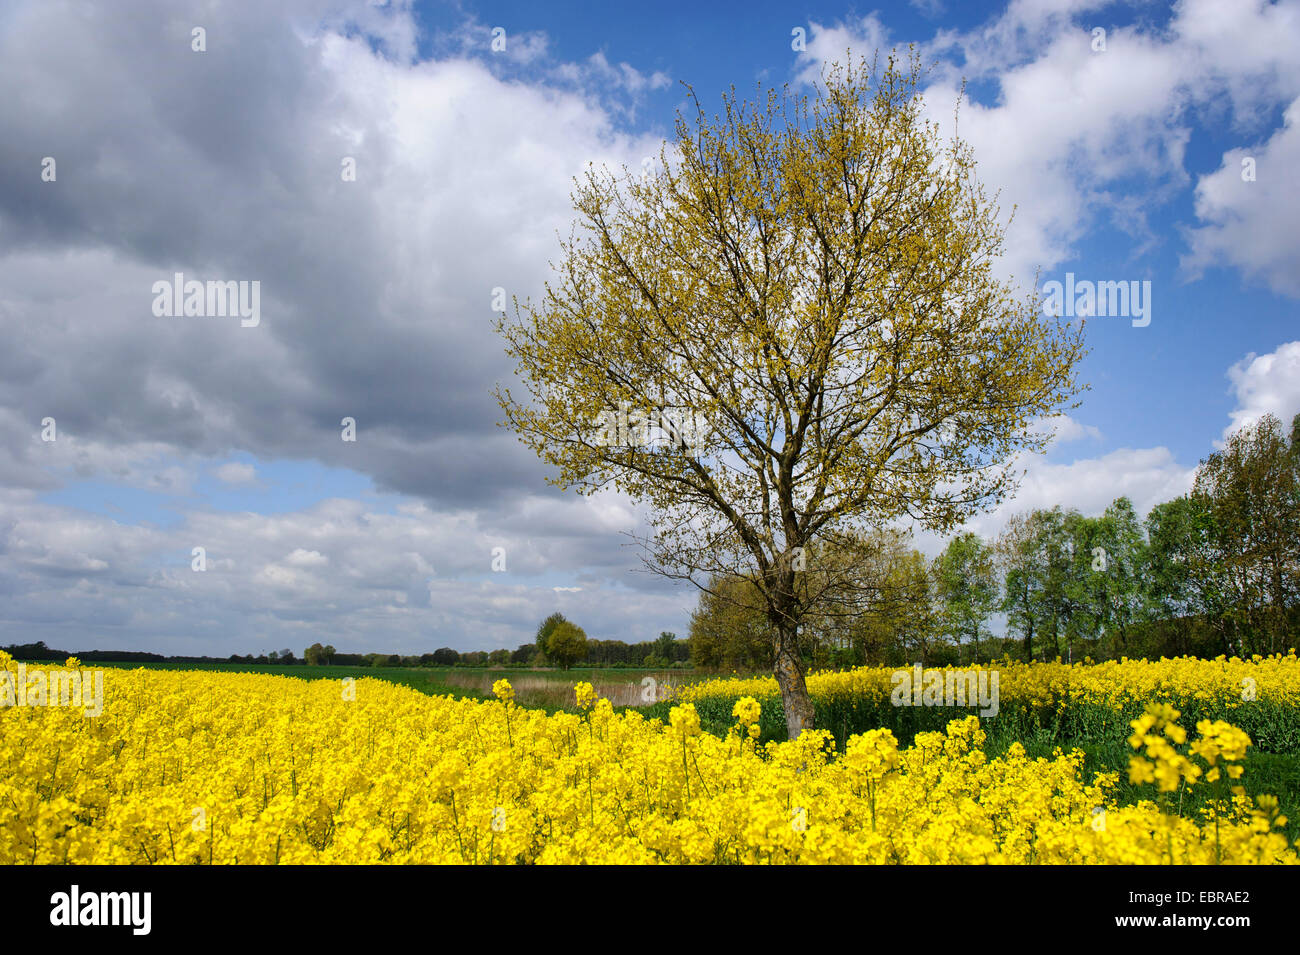 Le viol, le navet (Brassica napus), arbre dans un champ de colza, de l'ALLEMAGNE, Basse-Saxe Oldenburger Muensterland Banque D'Images